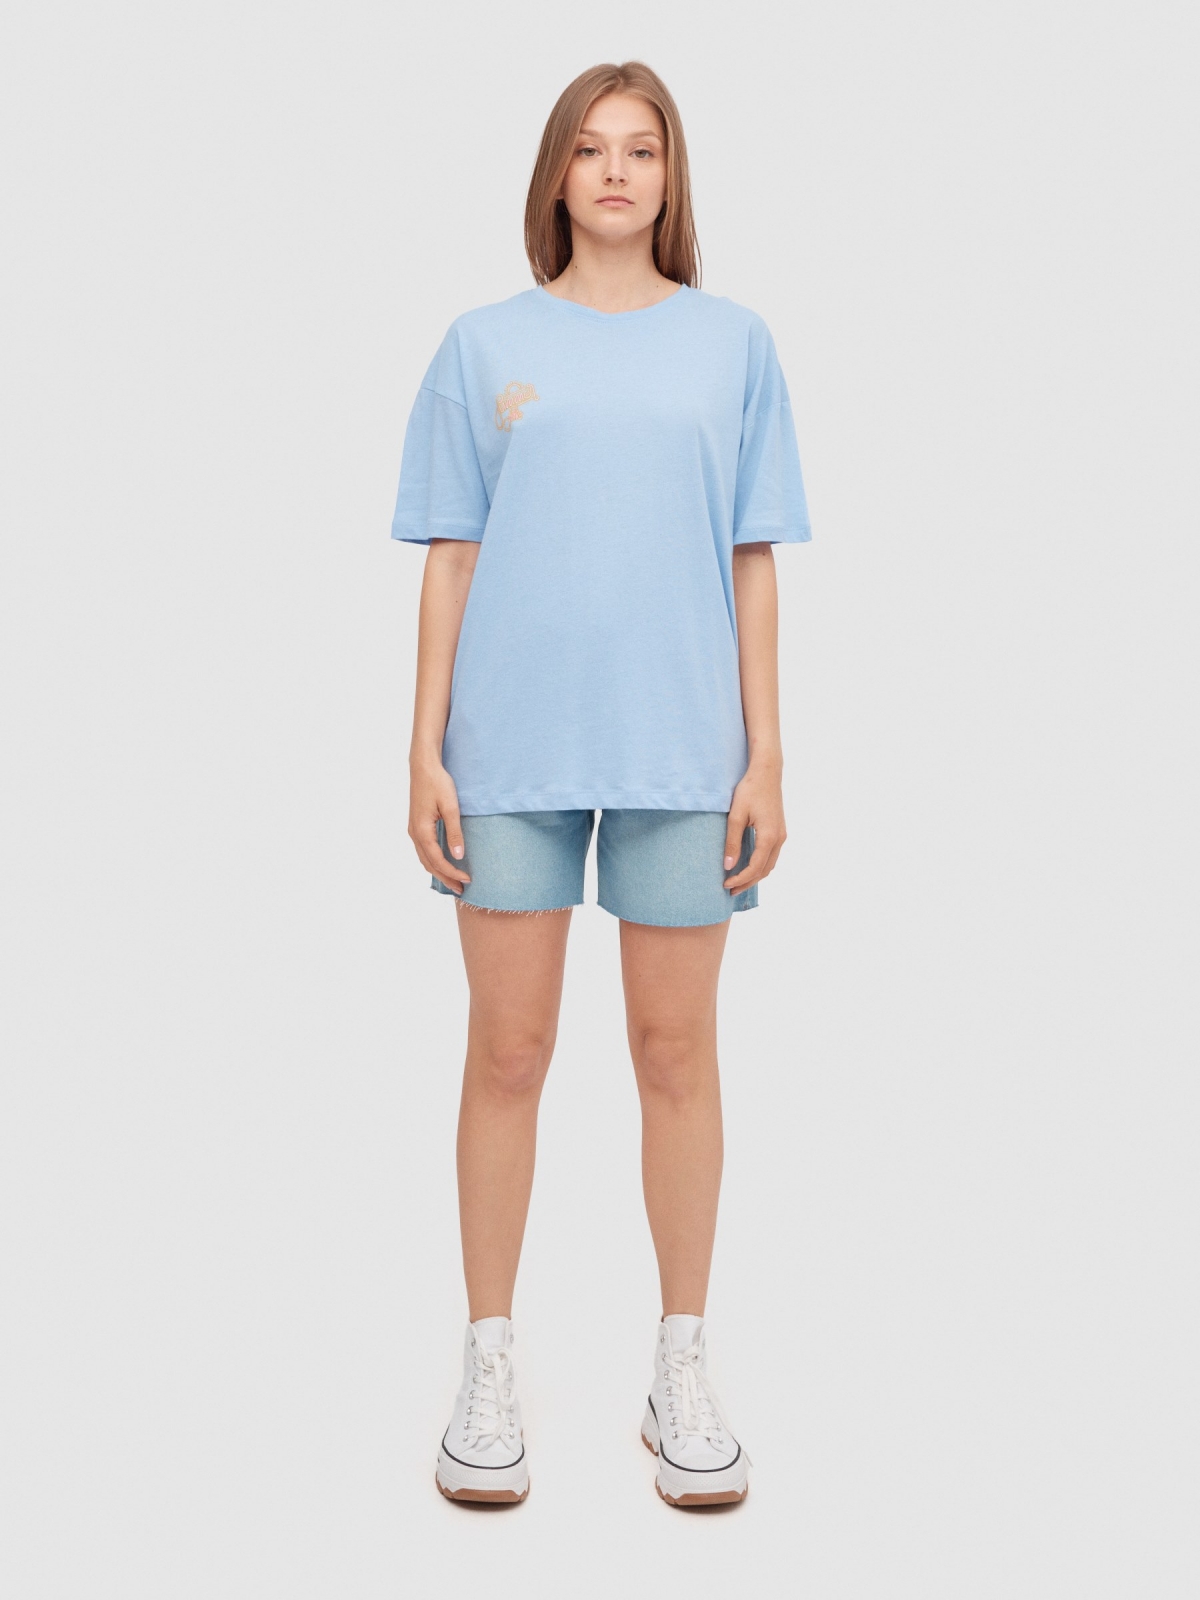 T-shirt oversize flamingo azul vista geral frontal